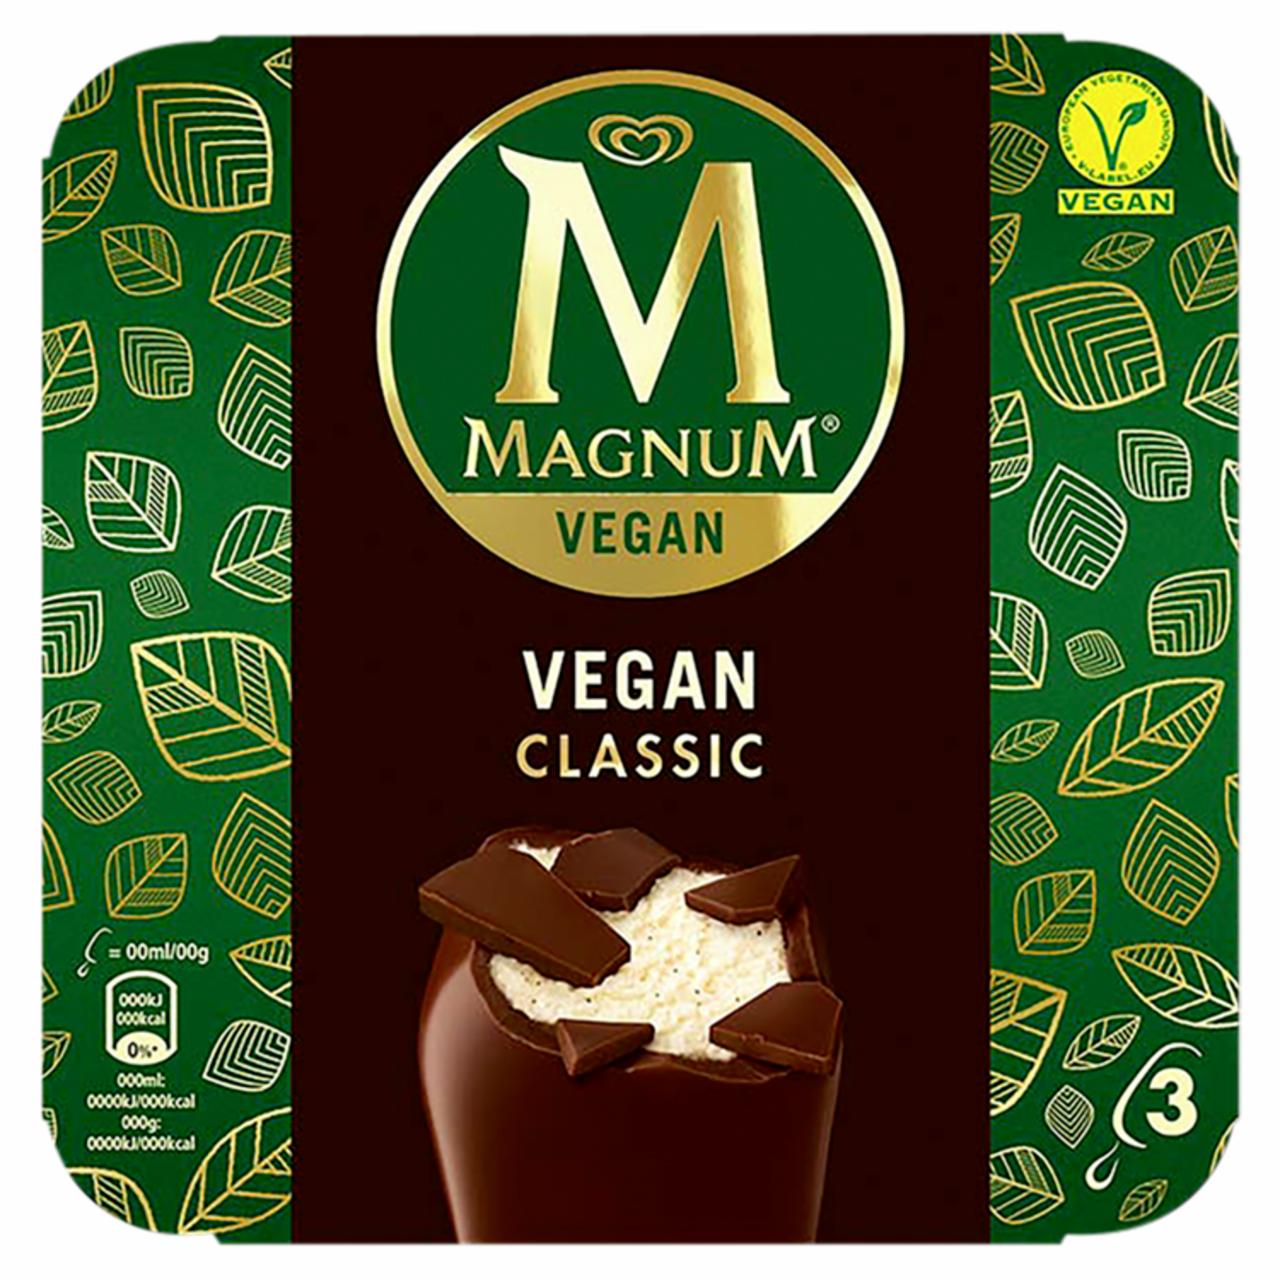 Képek - Magnum multipack jégkrém vegán Classic 3 x 90 ml (270 ml)